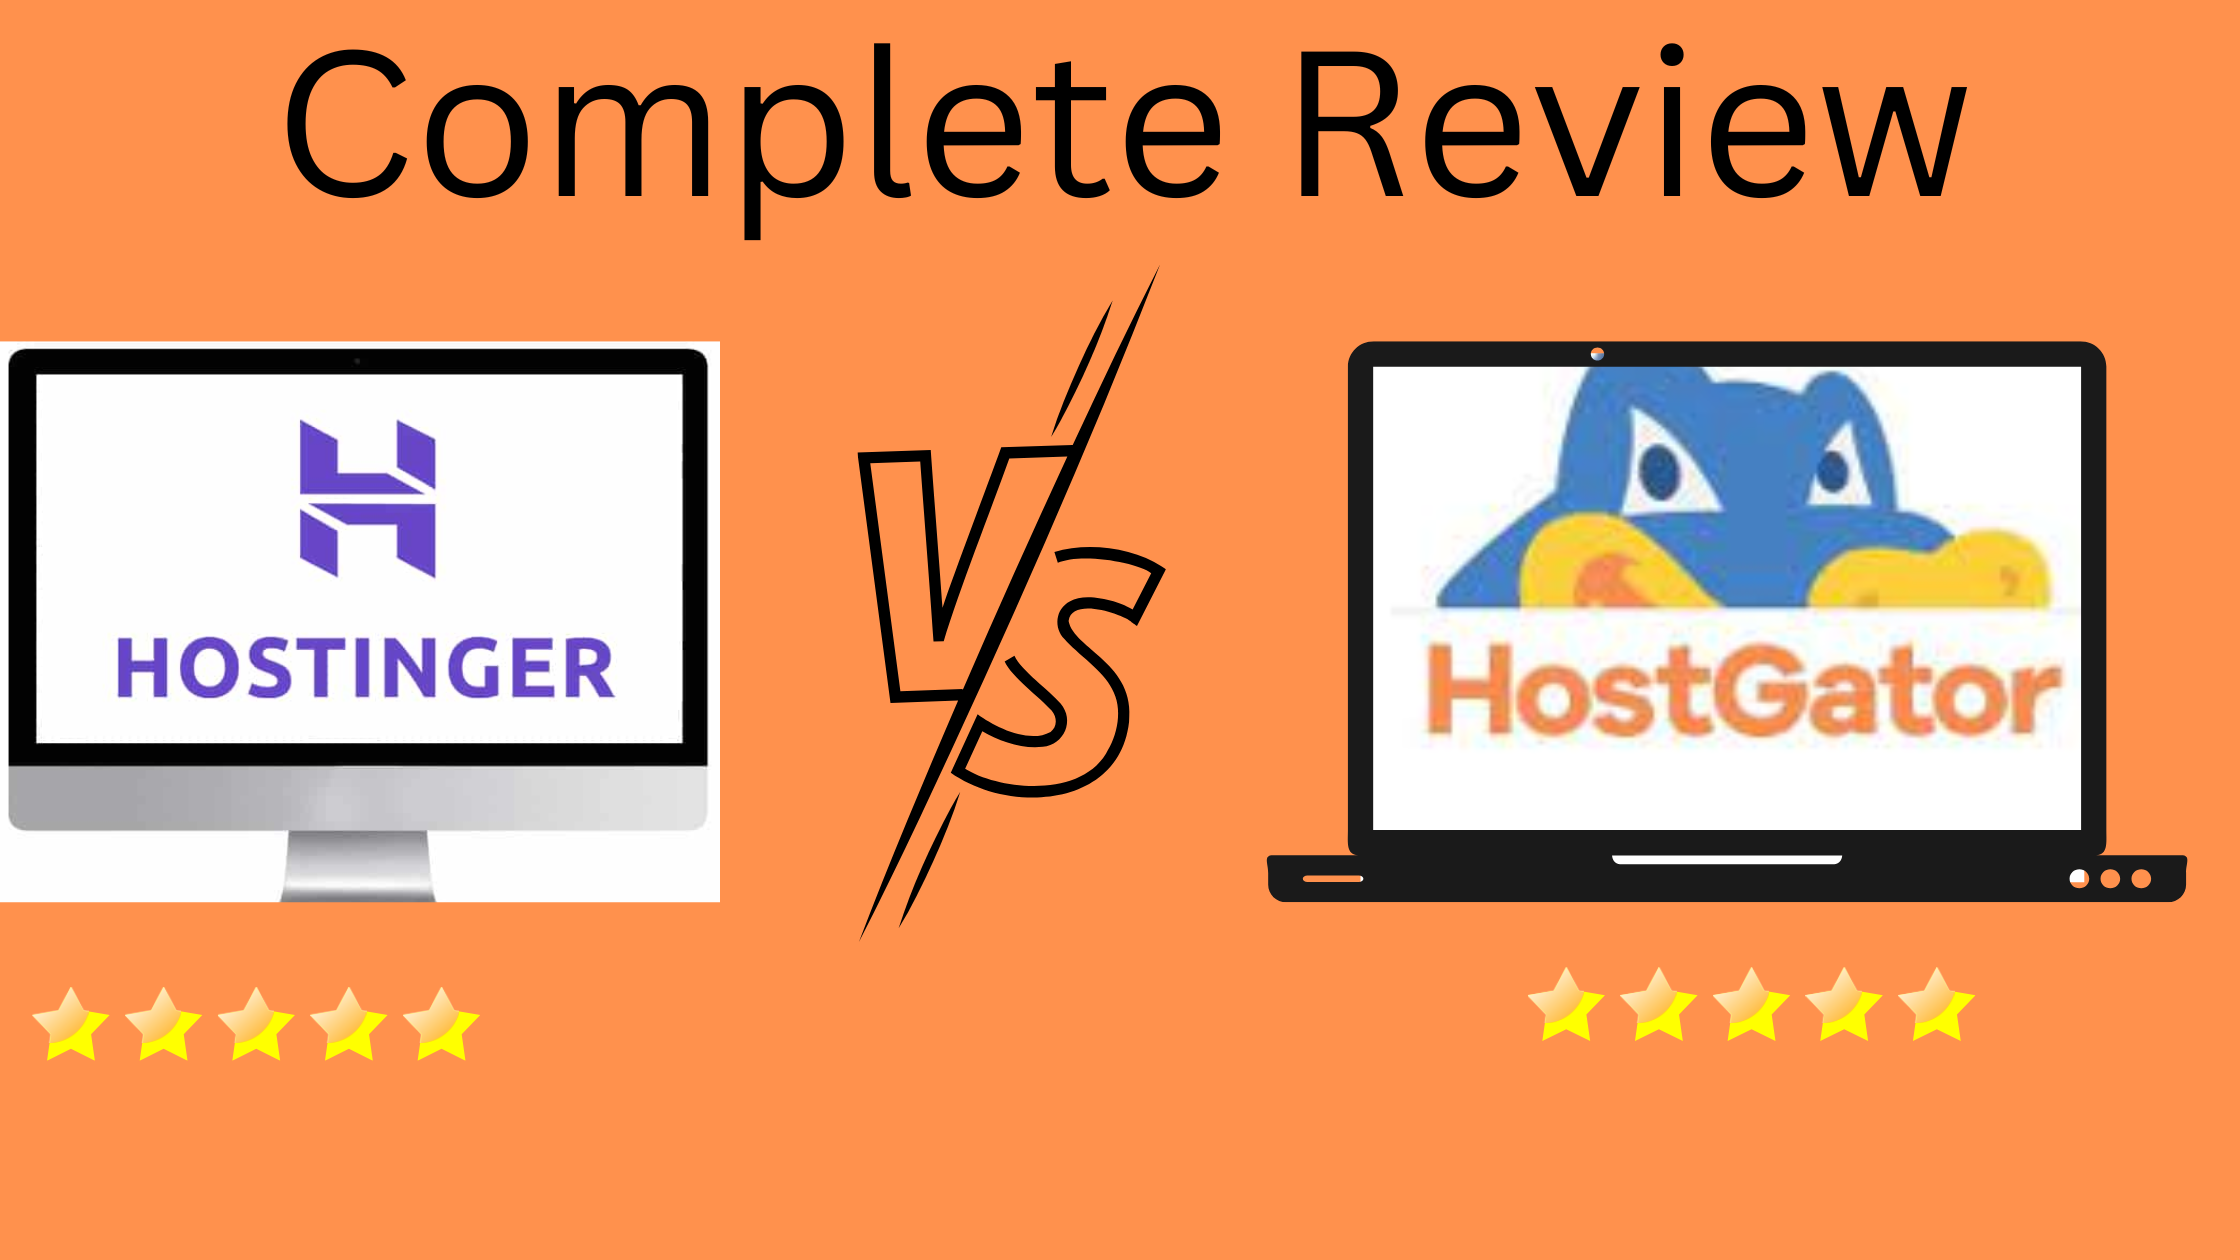 Hostinger vs Hostgator review